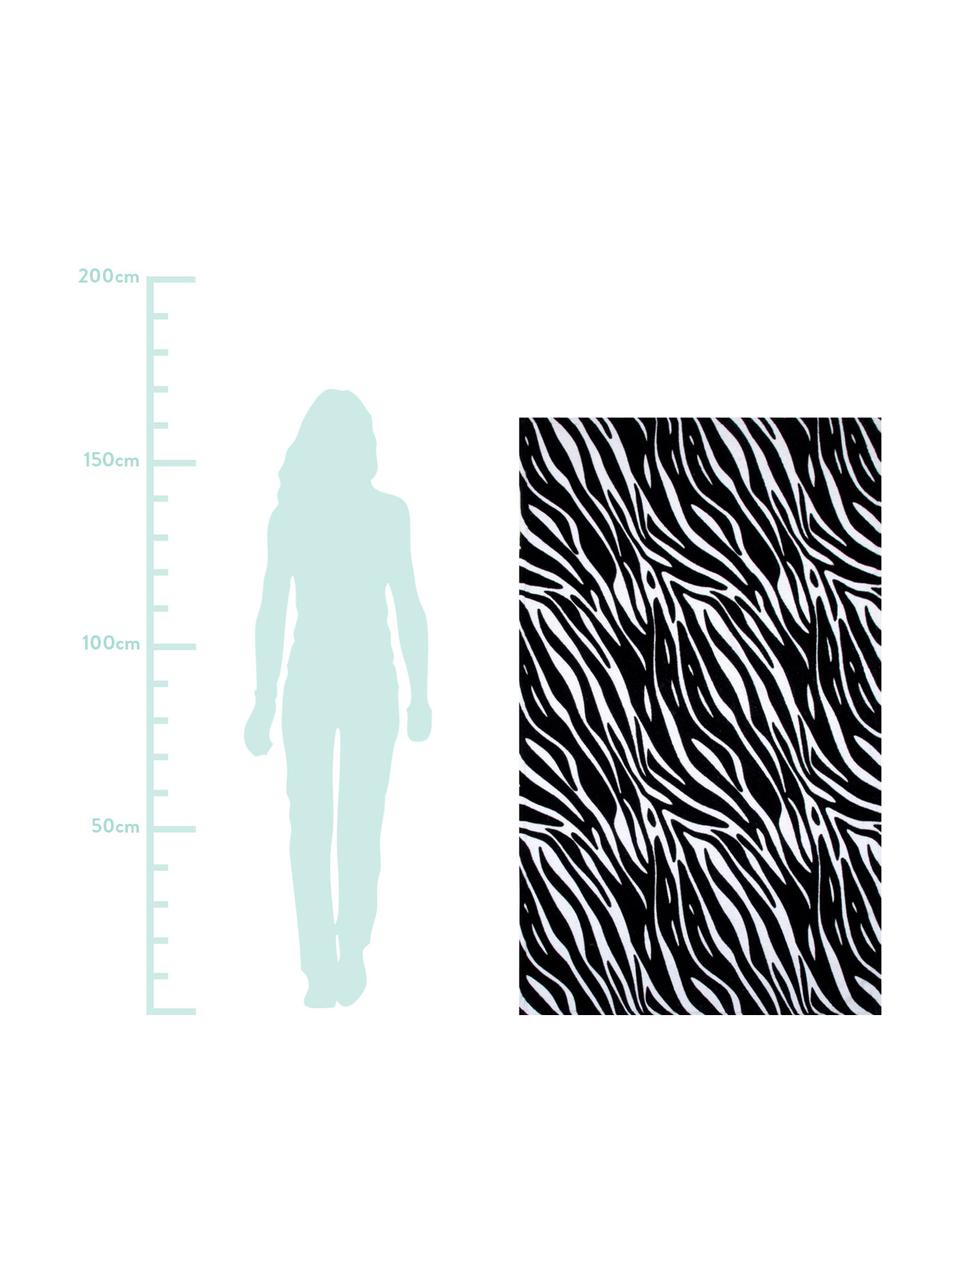 Strandtuch Zebra, 100% Baumwolle, leichte Qualität
350 g/m², Schwarz,Weiß, 90 x 160 cm